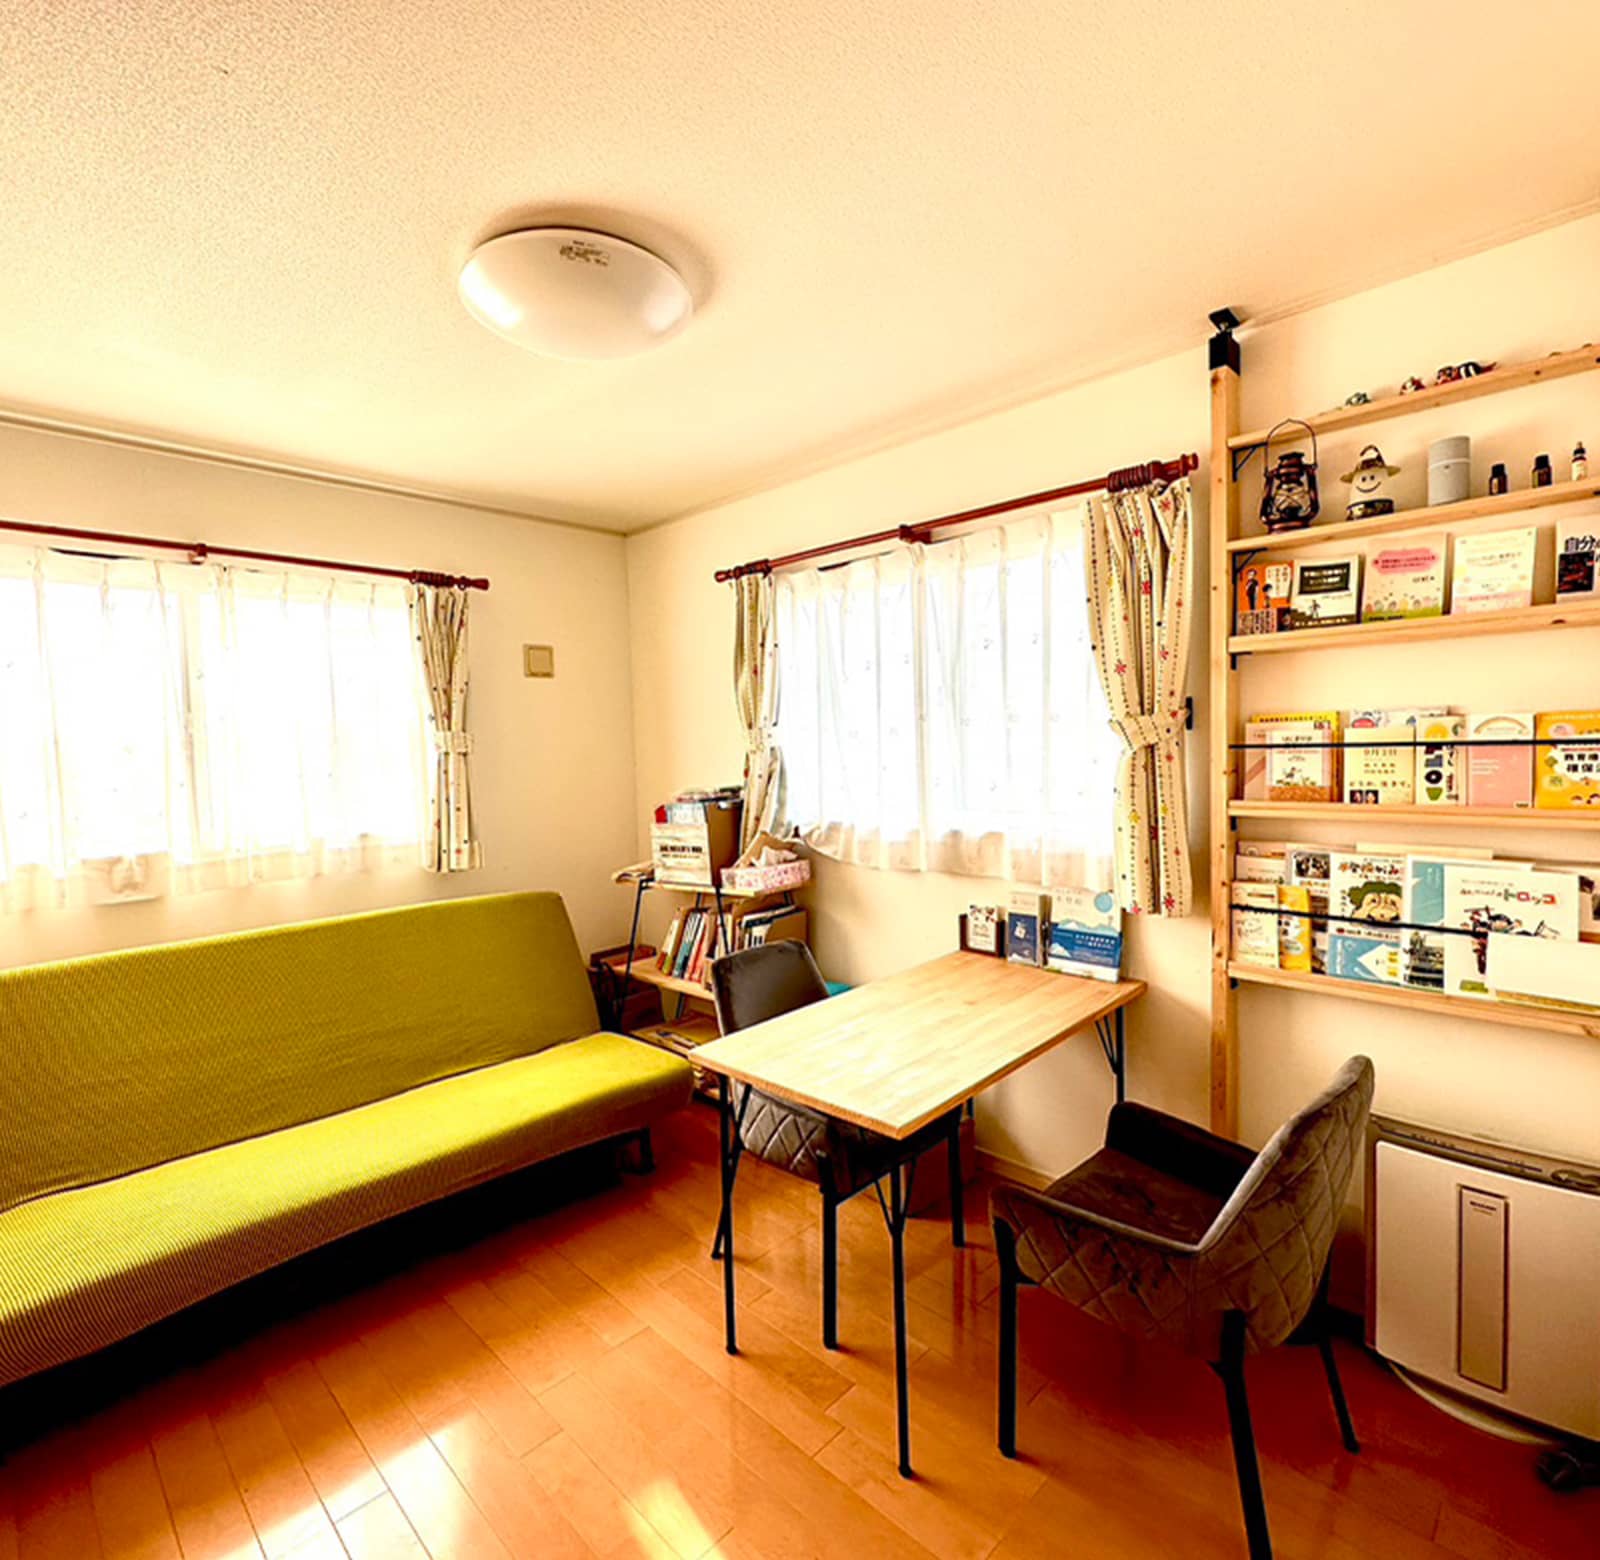 緑色のソファーと木製のテーブルが置かれた室内